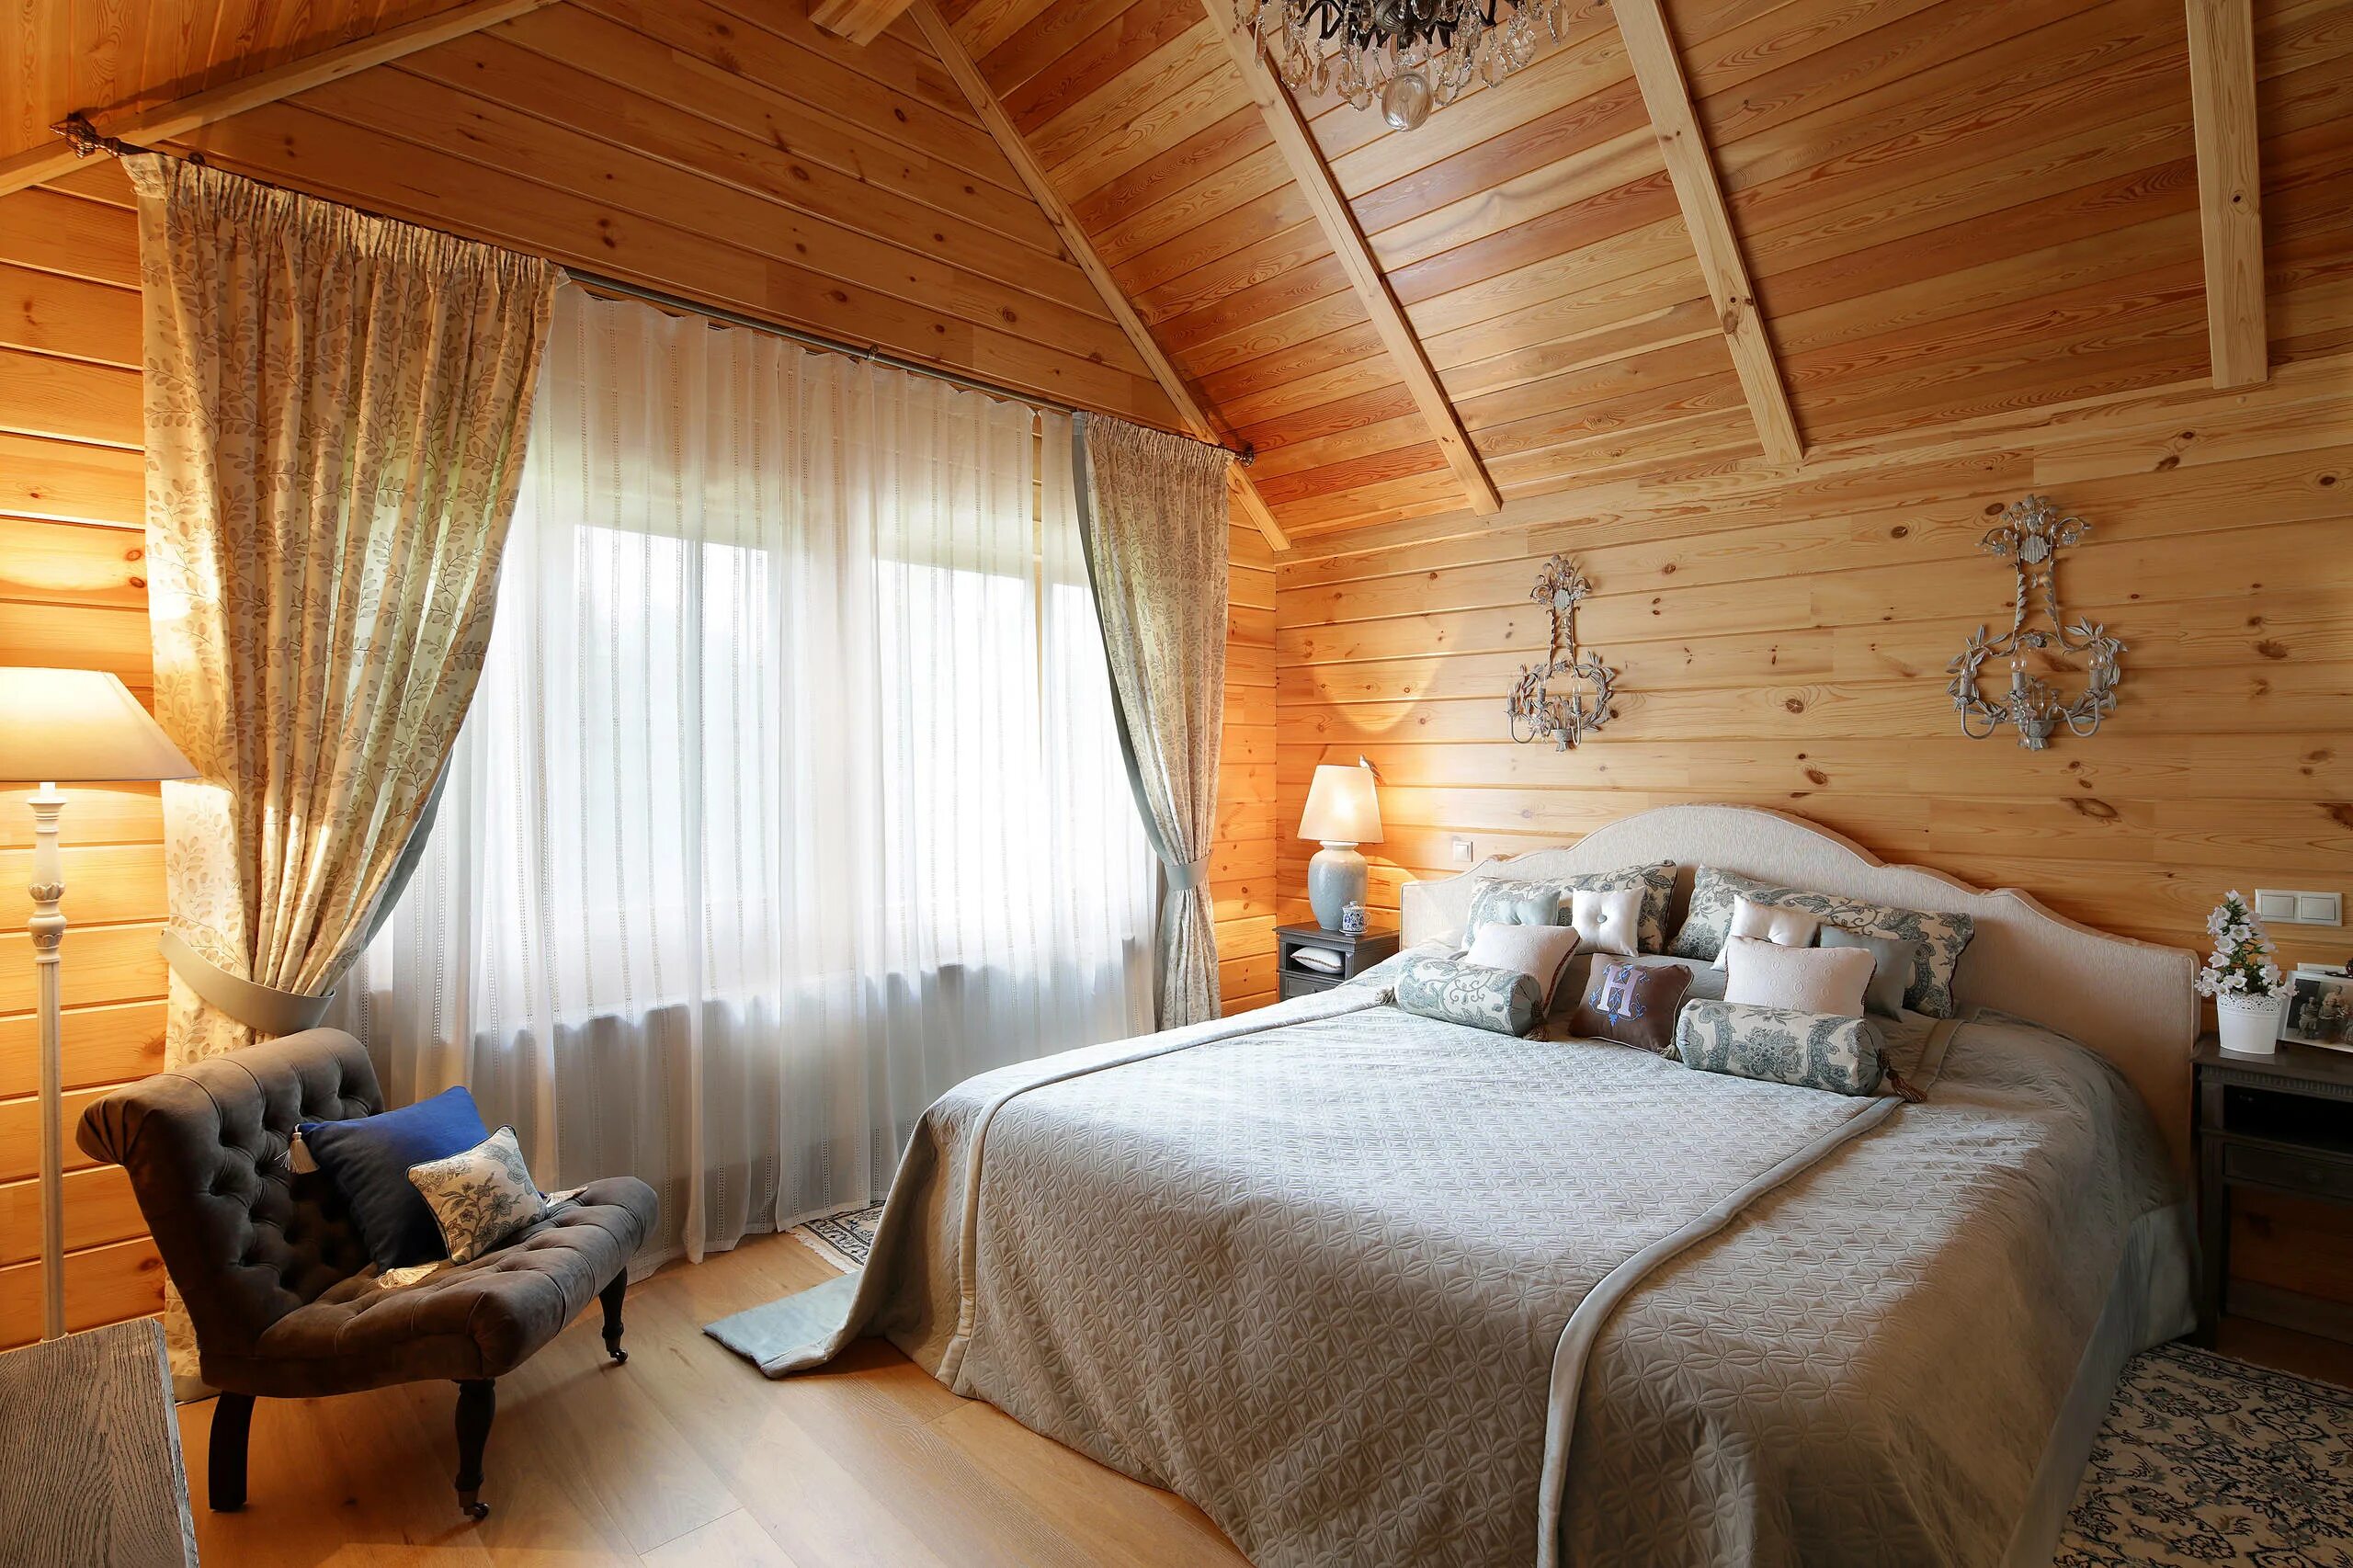 Интерьер спальни в деревянном доме. Спальня на даче. Интерьер деревянного дома. Спальня в загородном деревянном доме.